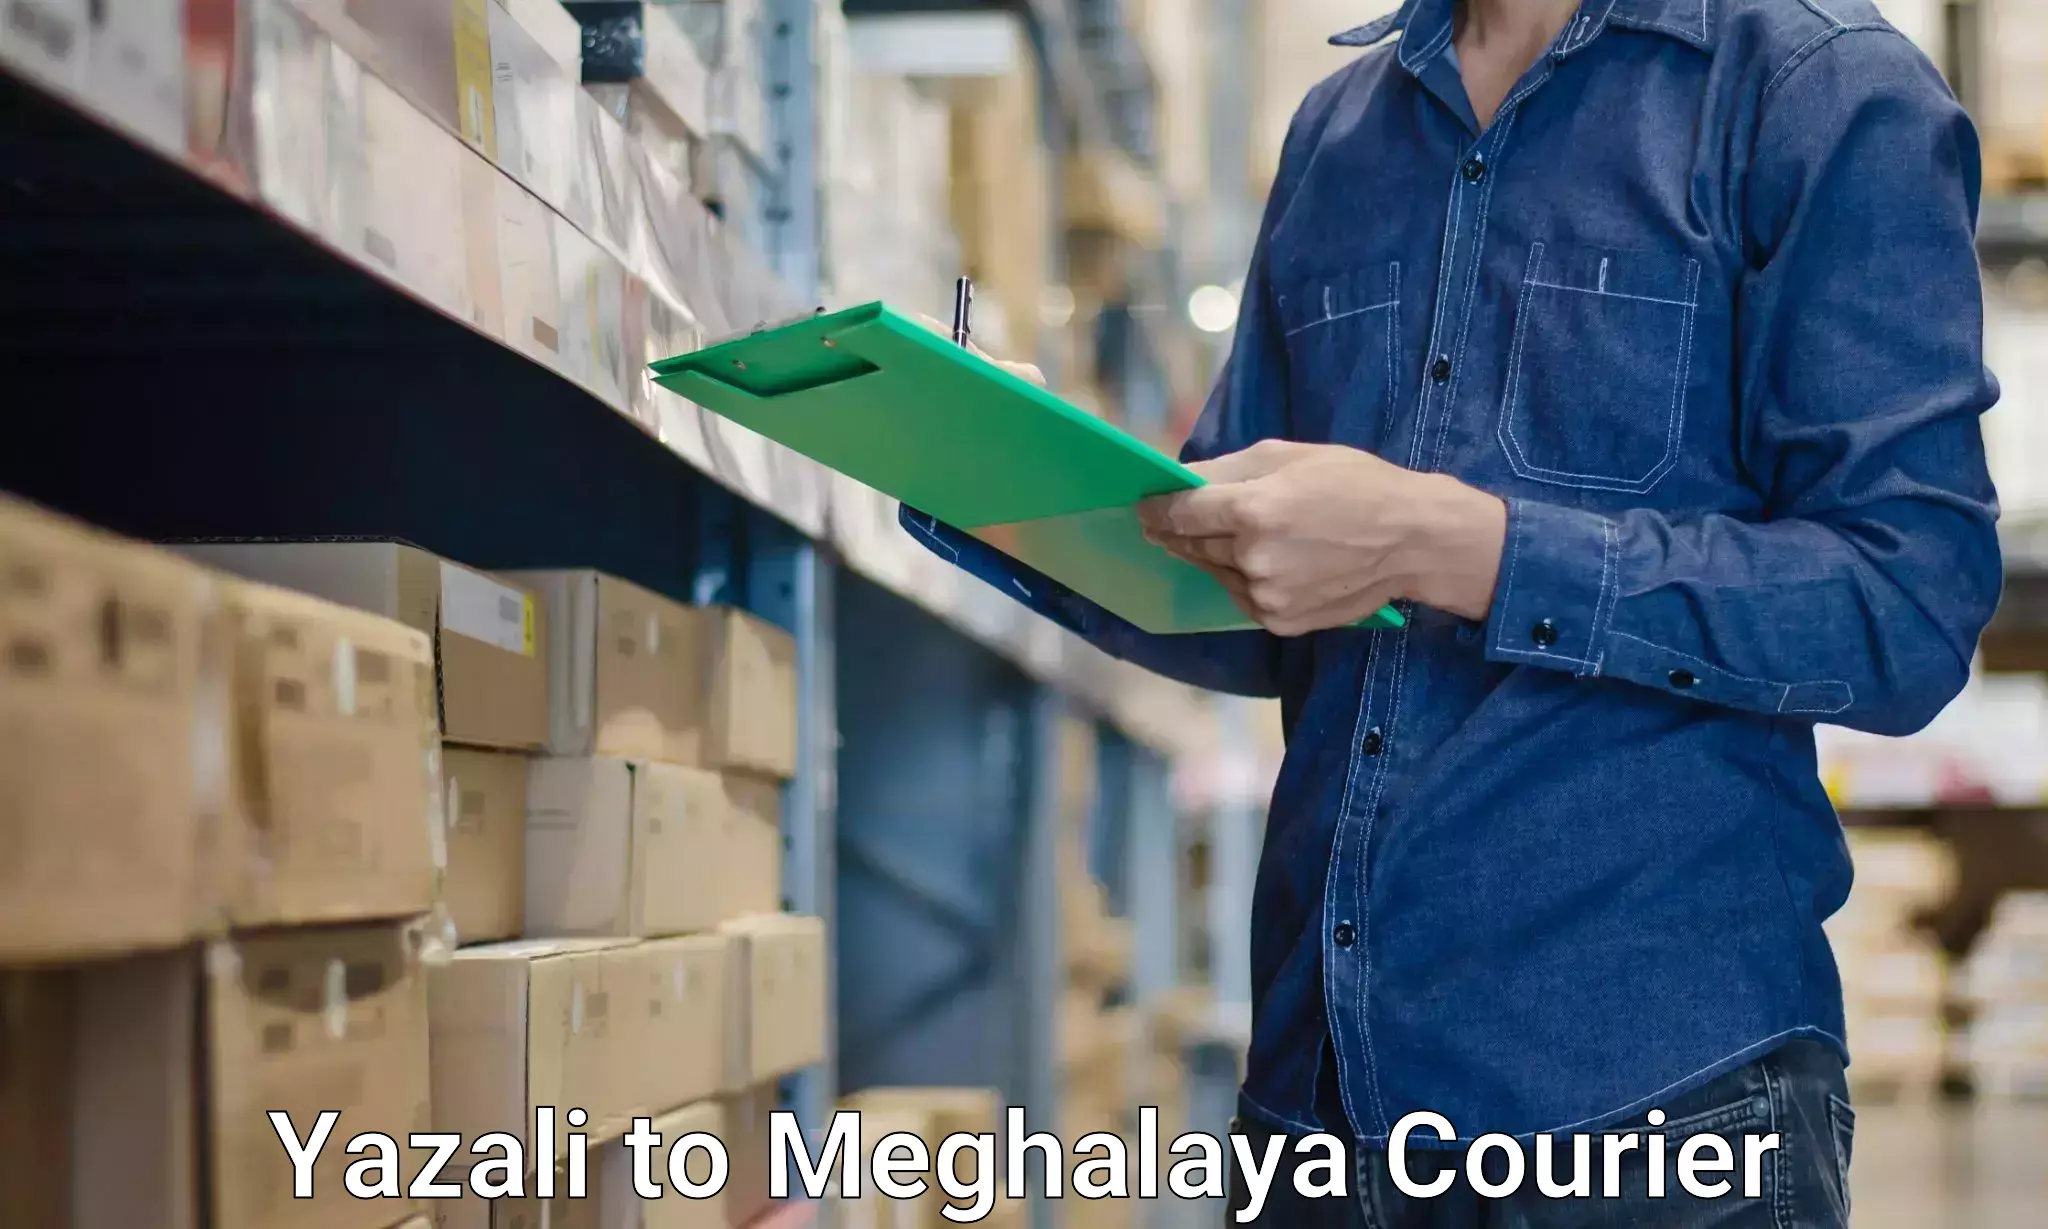 Efficient moving services Yazali to Meghalaya